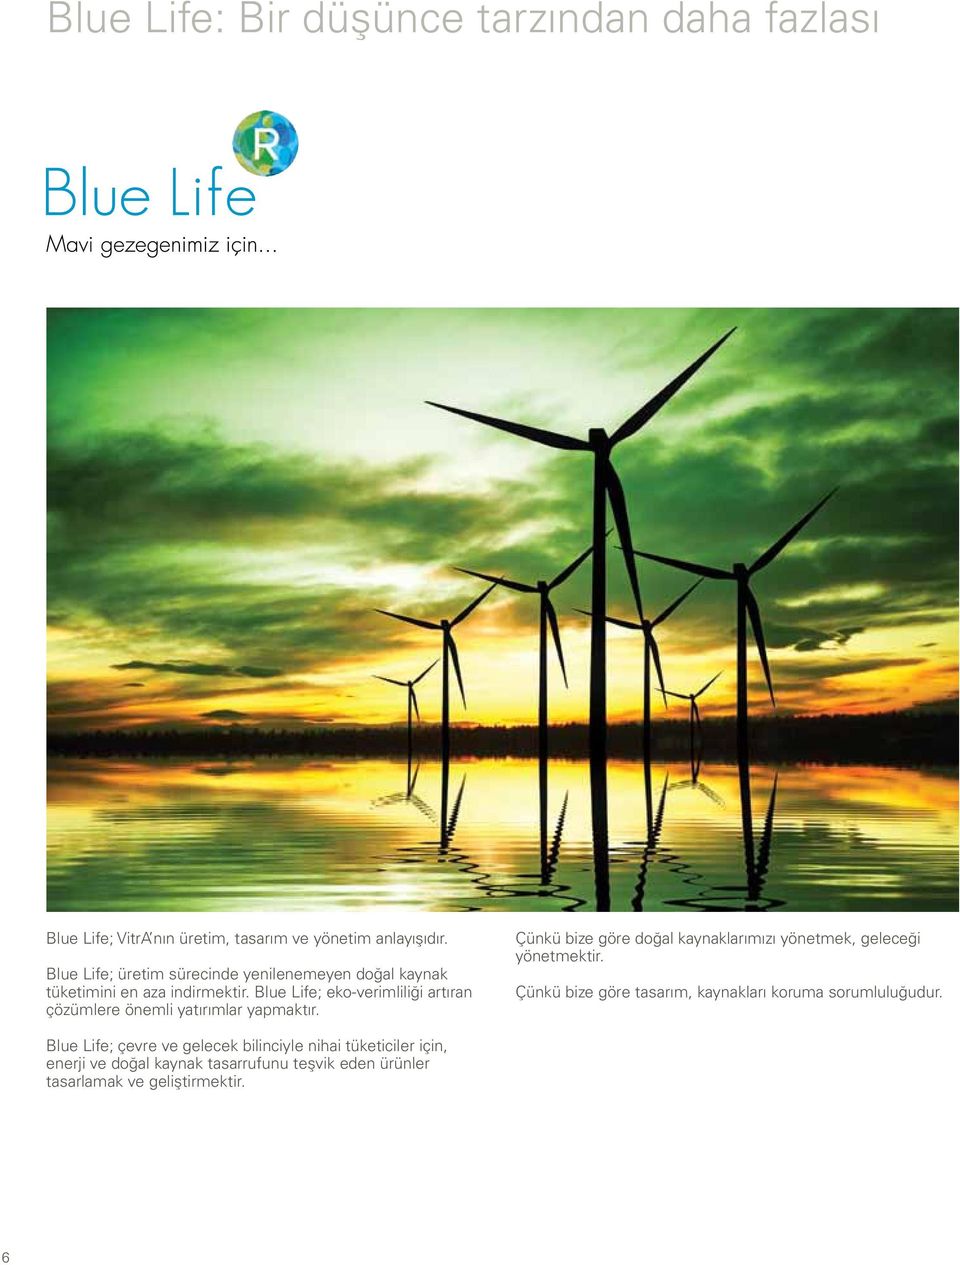 Blue Life; eko-verimliliği artıran çözümlere önemli yatırımlar yapmaktır.